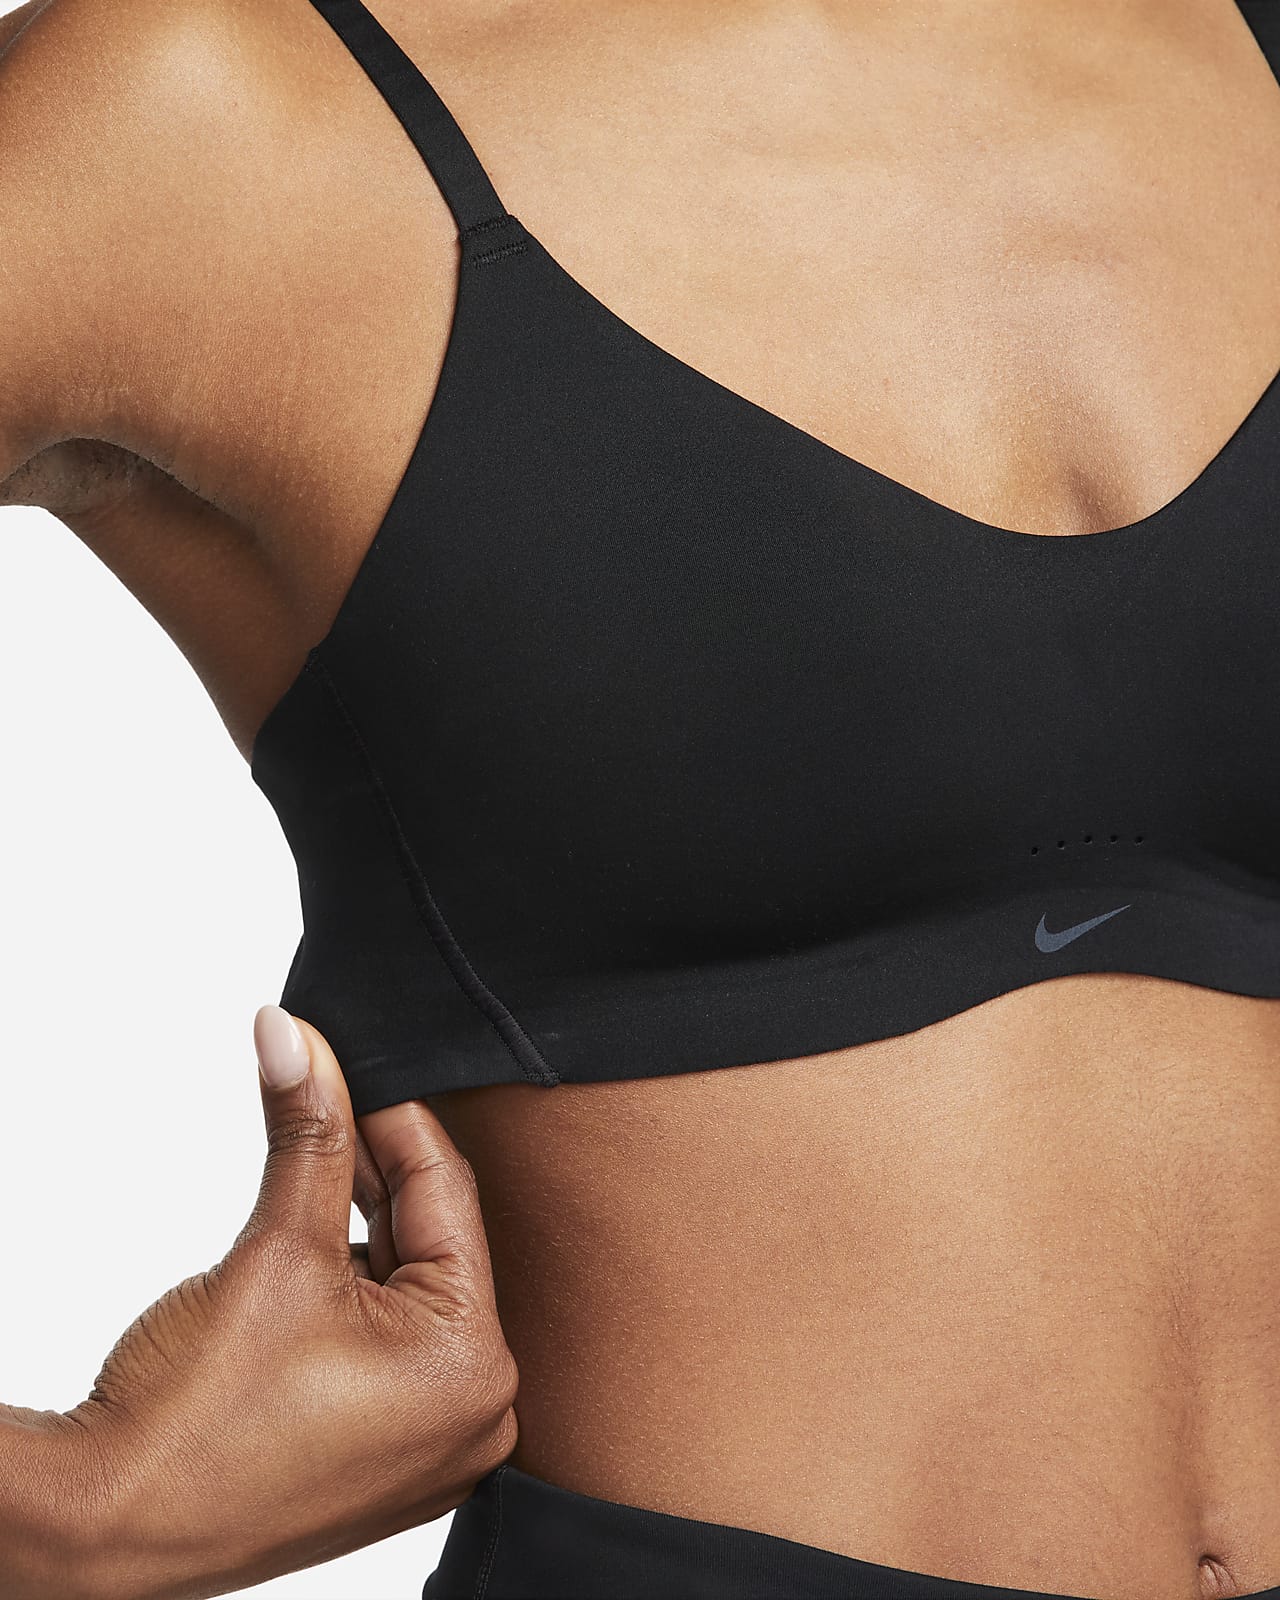 Nike - NEW NIKE SPORTS BRA on Designer Wardrobe